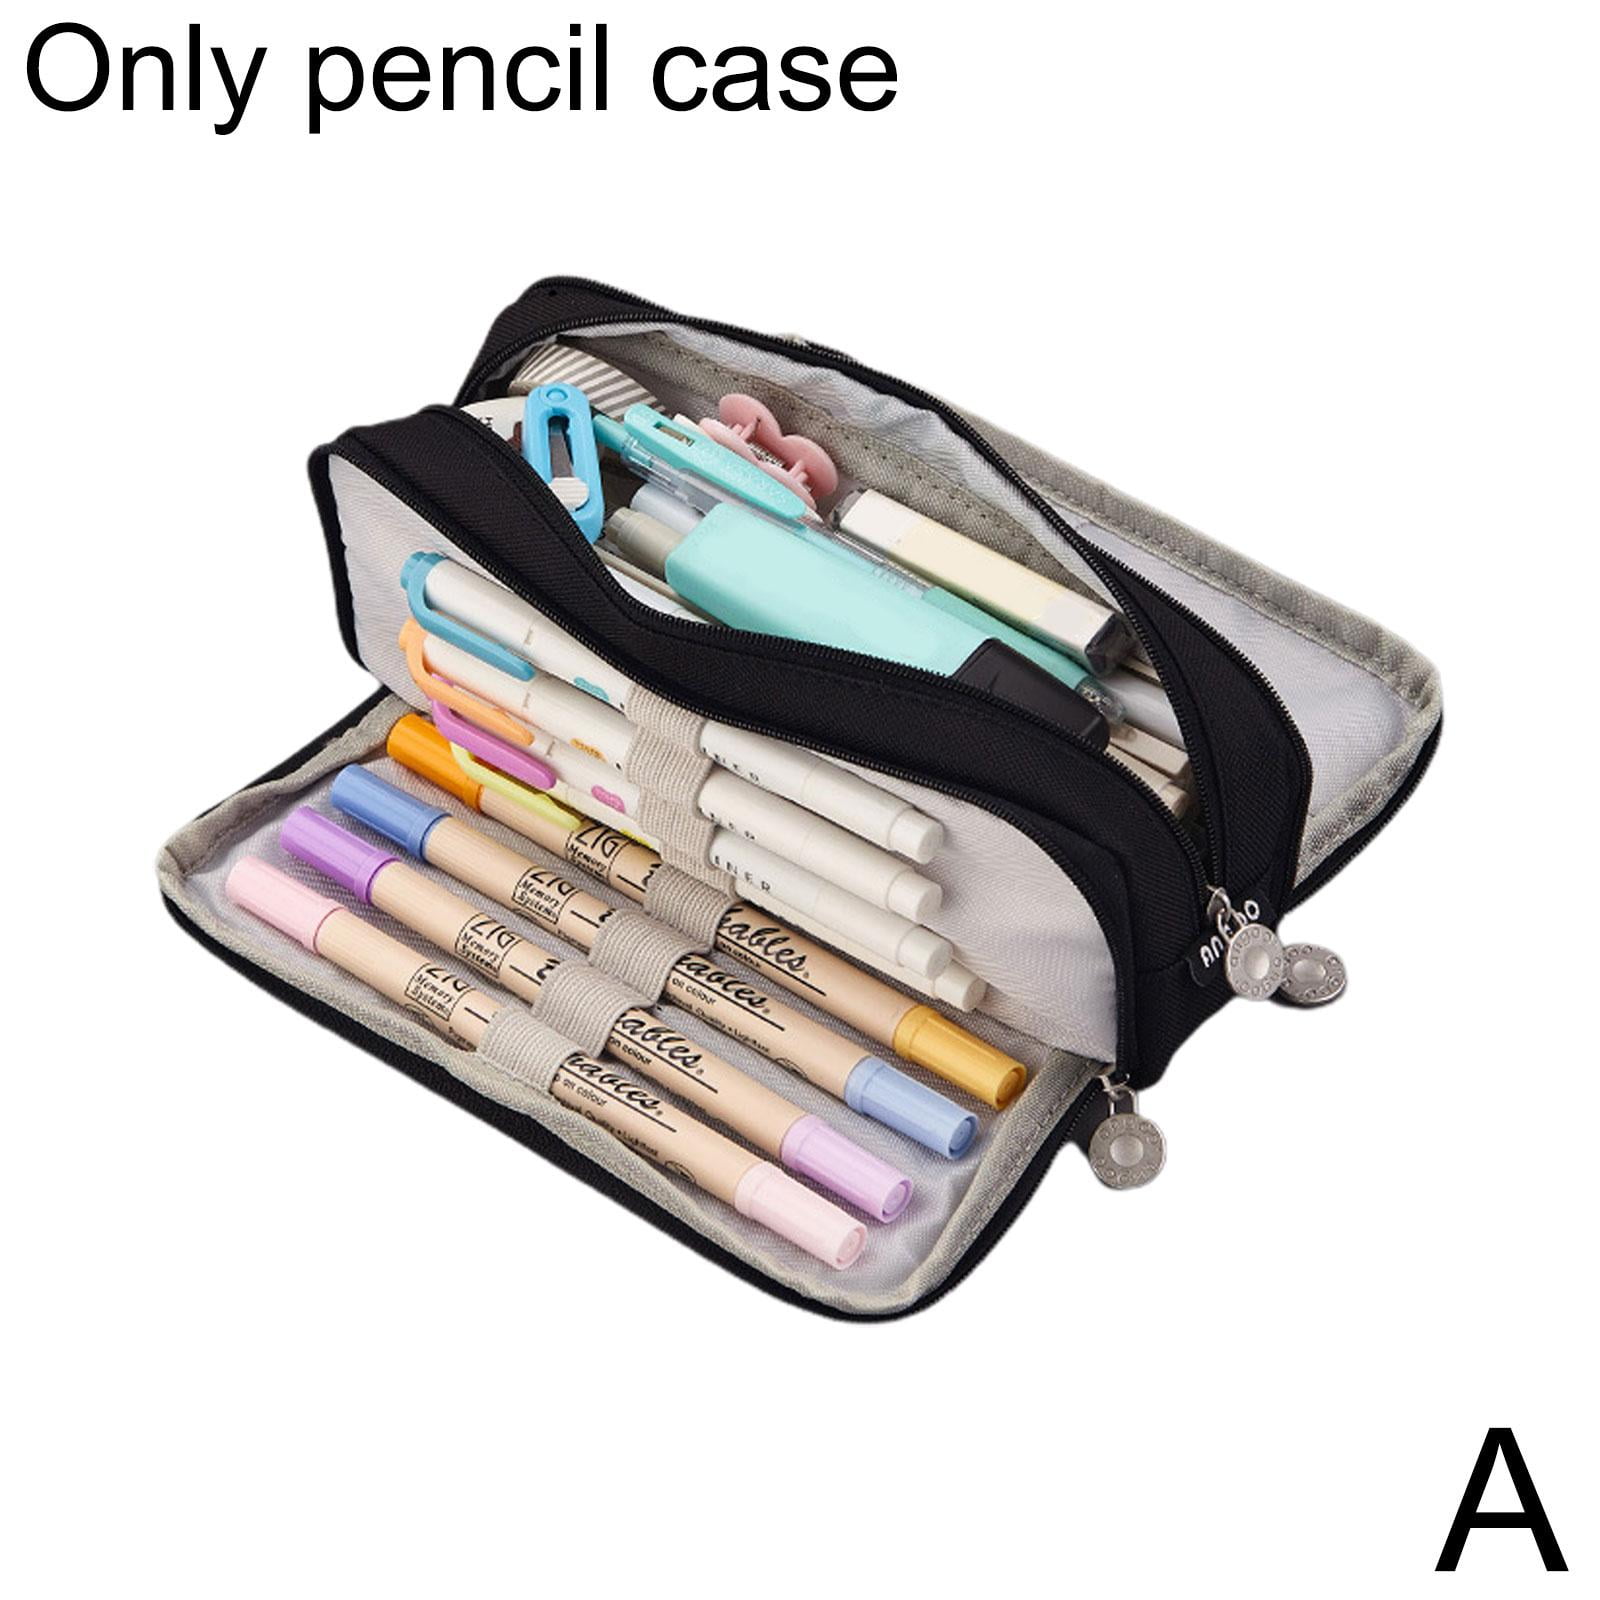 Pencil Case XL Ver.dual 4colors / Pen Case / Pencil Pouch 